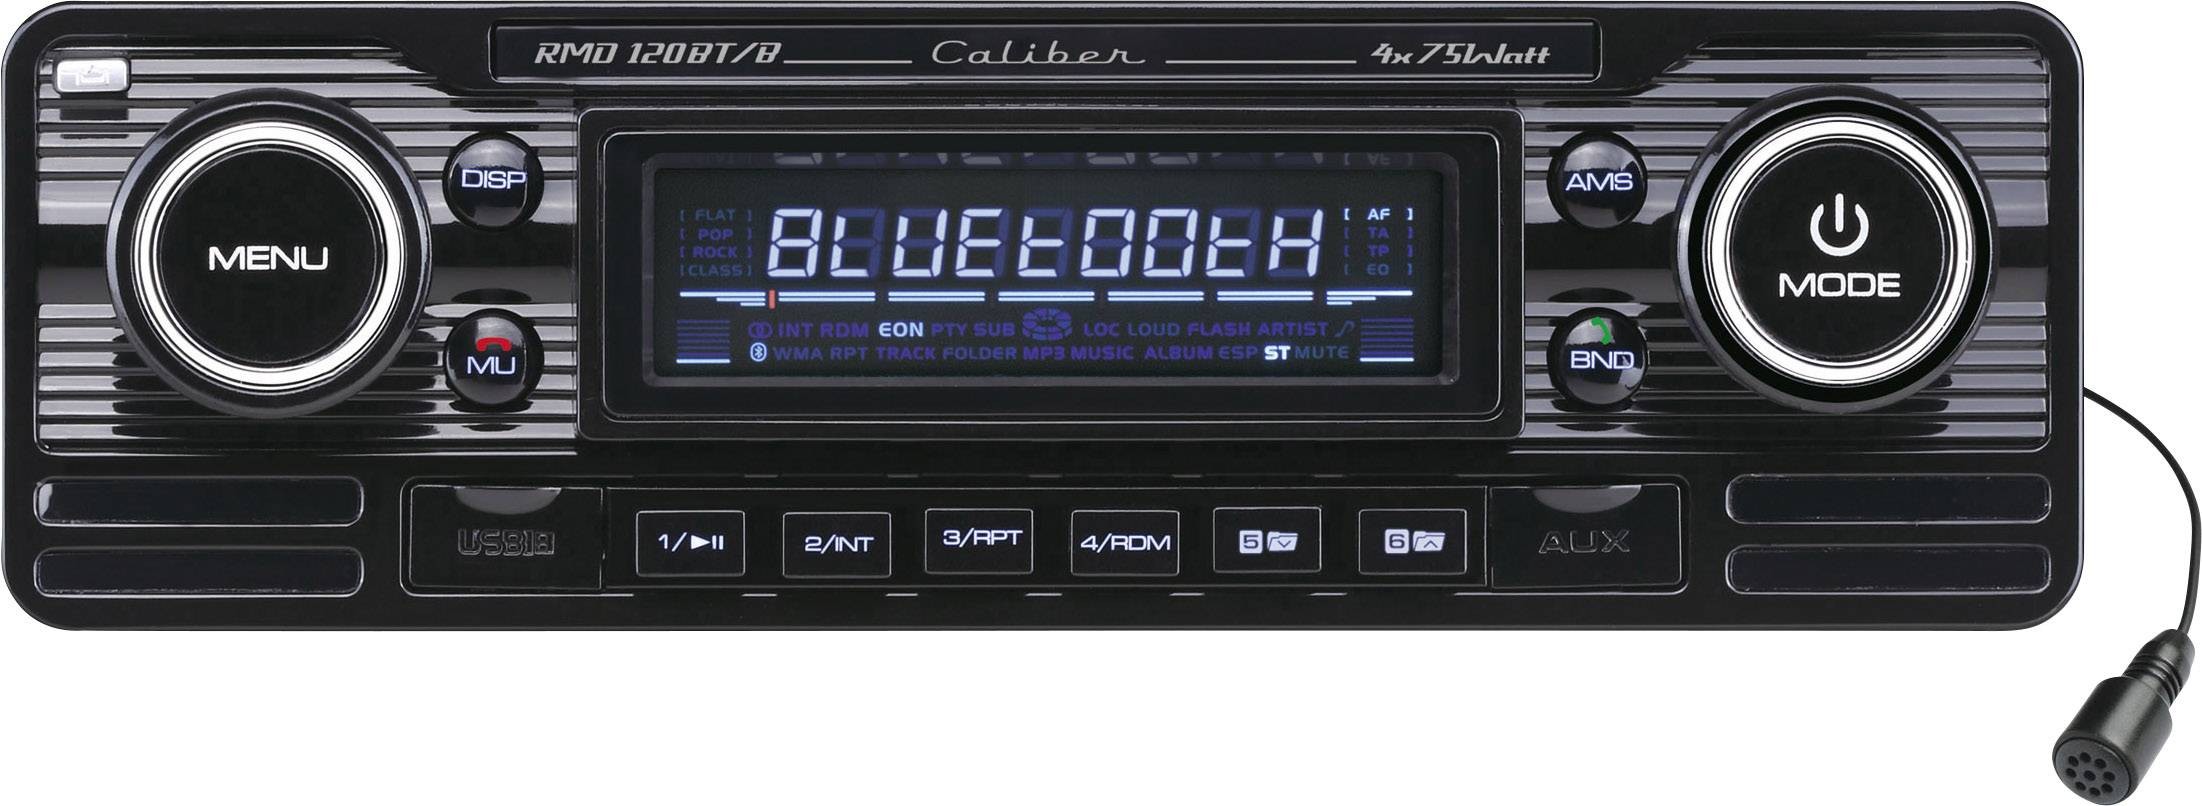 opvoeder Pikken Mondstuk CALIBER Autoradio Retro Look Black Met Bluetooth - Usb - Aux kopen?